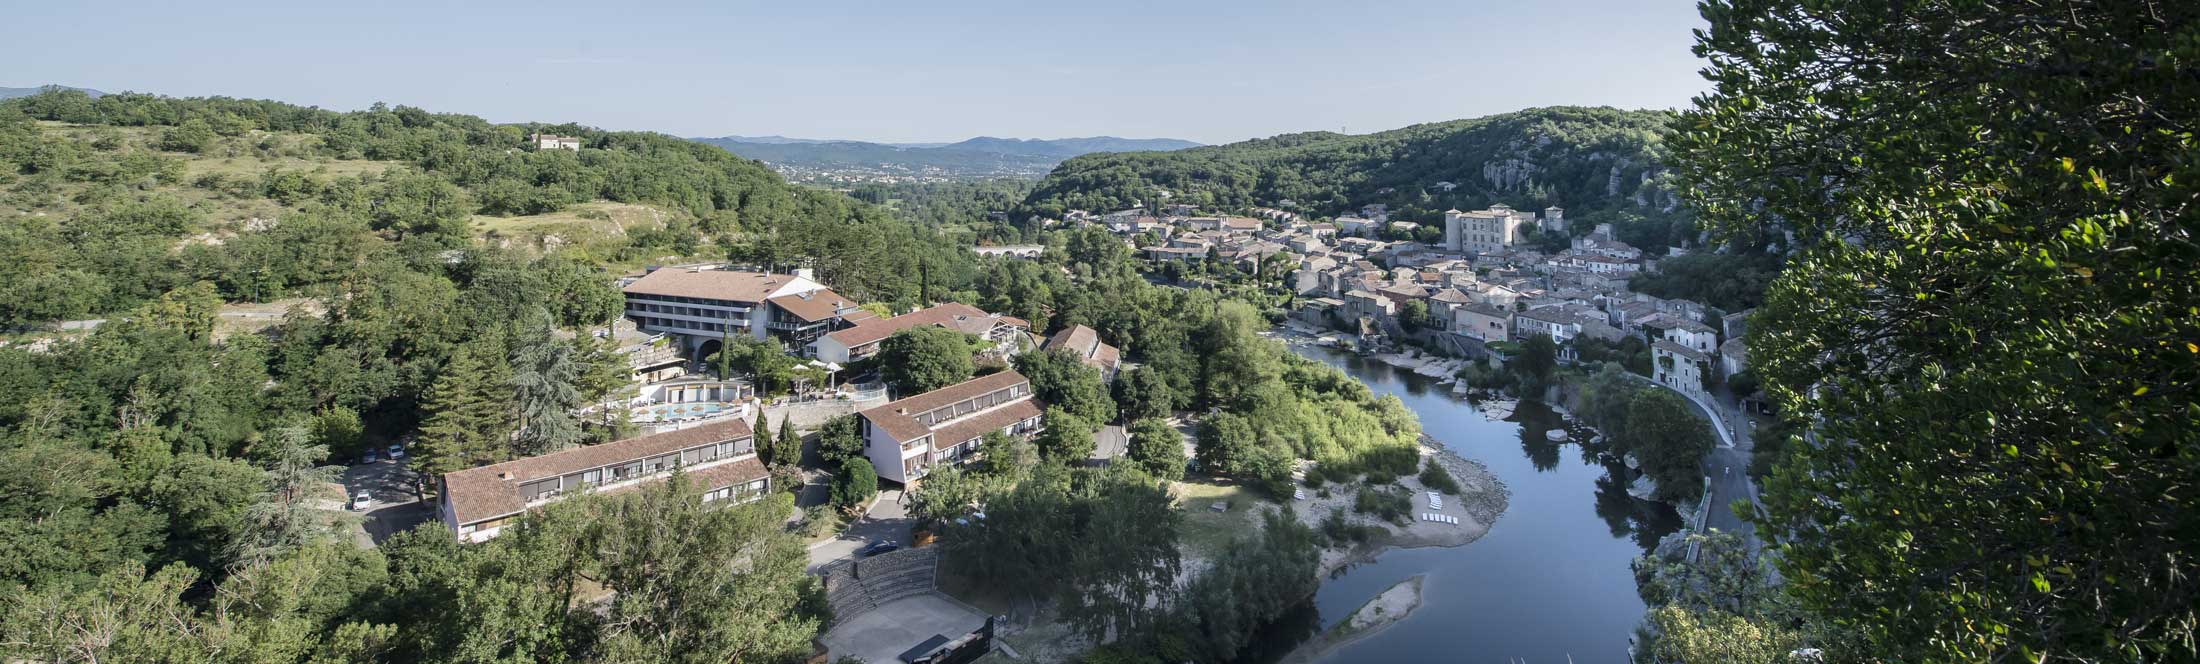 Le Domaine Lou Capitelle & SPA est . Situé au cœur d'un cadre naturel enchanteur en bord de rivière en Ardèche